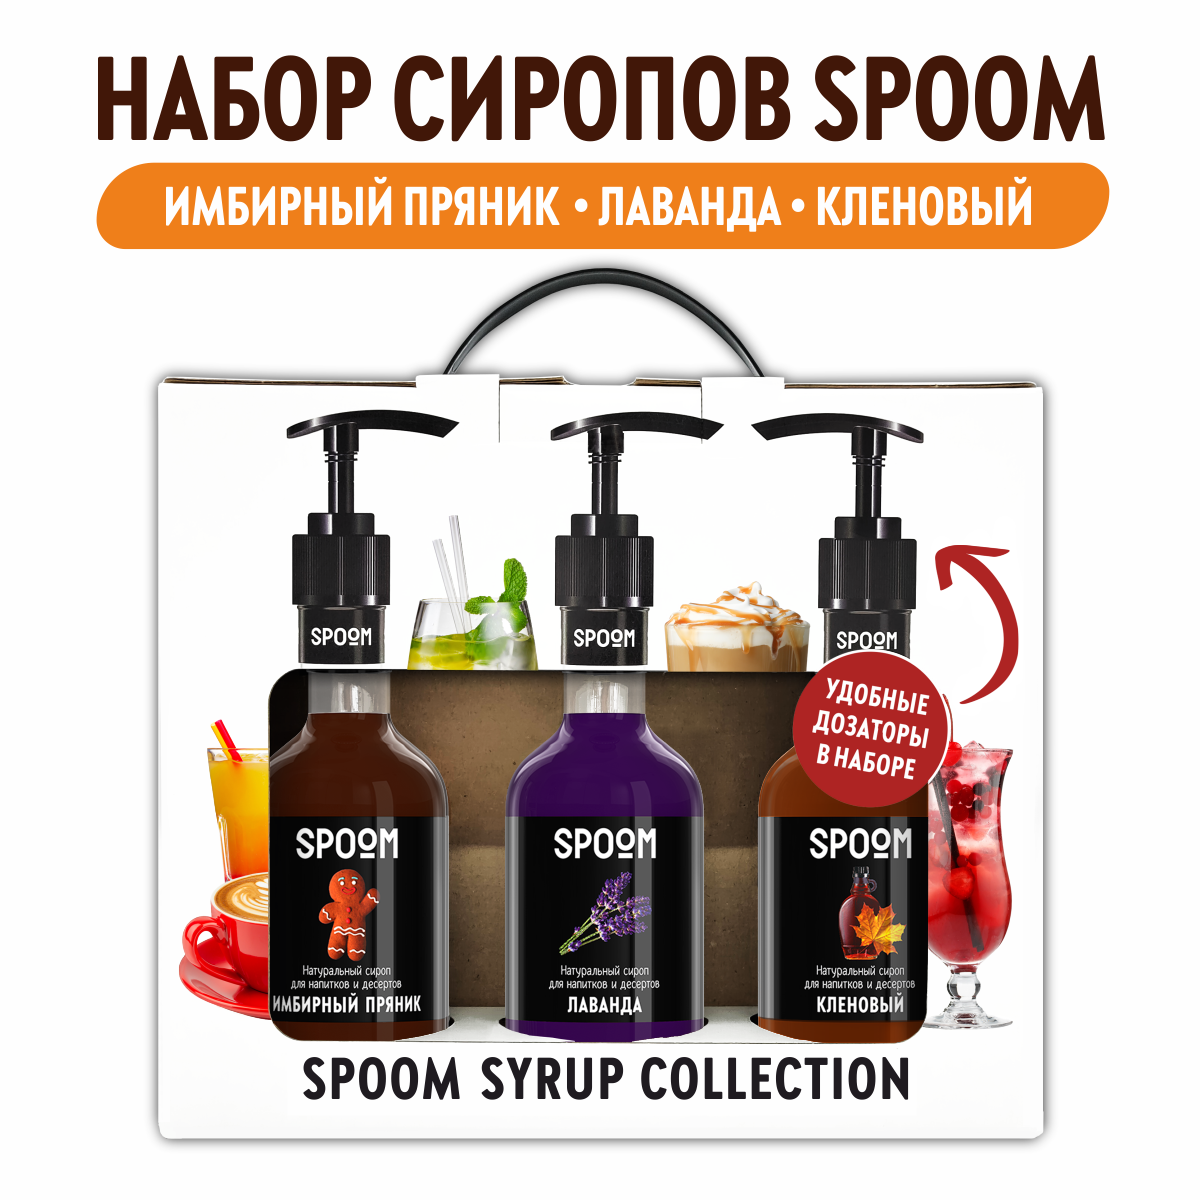 Набор сиропов SPOOM Имбирный пряник Лаванда Кленовый для кофе 3шт 250мл + 3 дозатора - фото 1